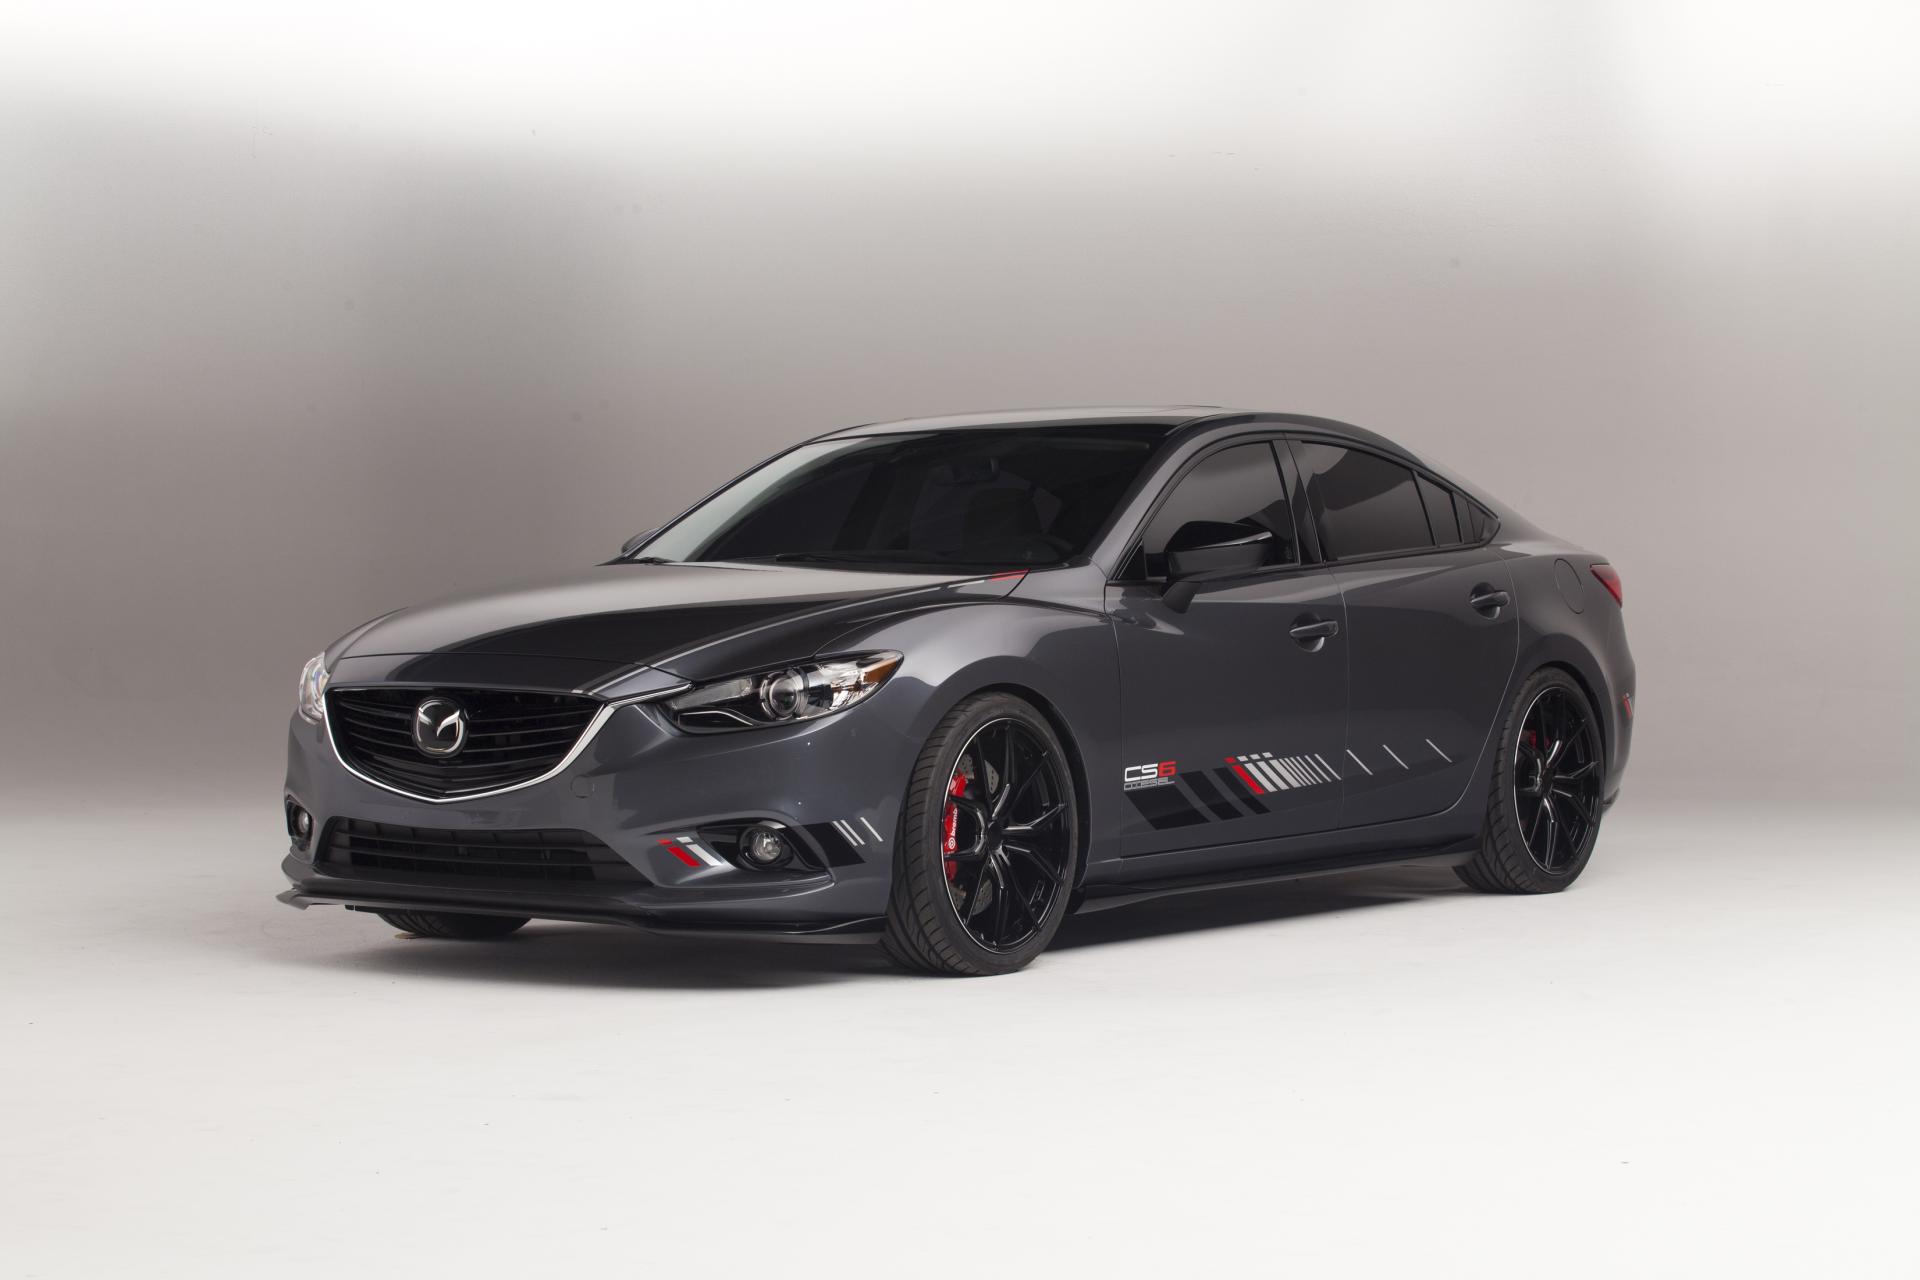 2013 Mazda Club Sport 6 Concept News and Information com